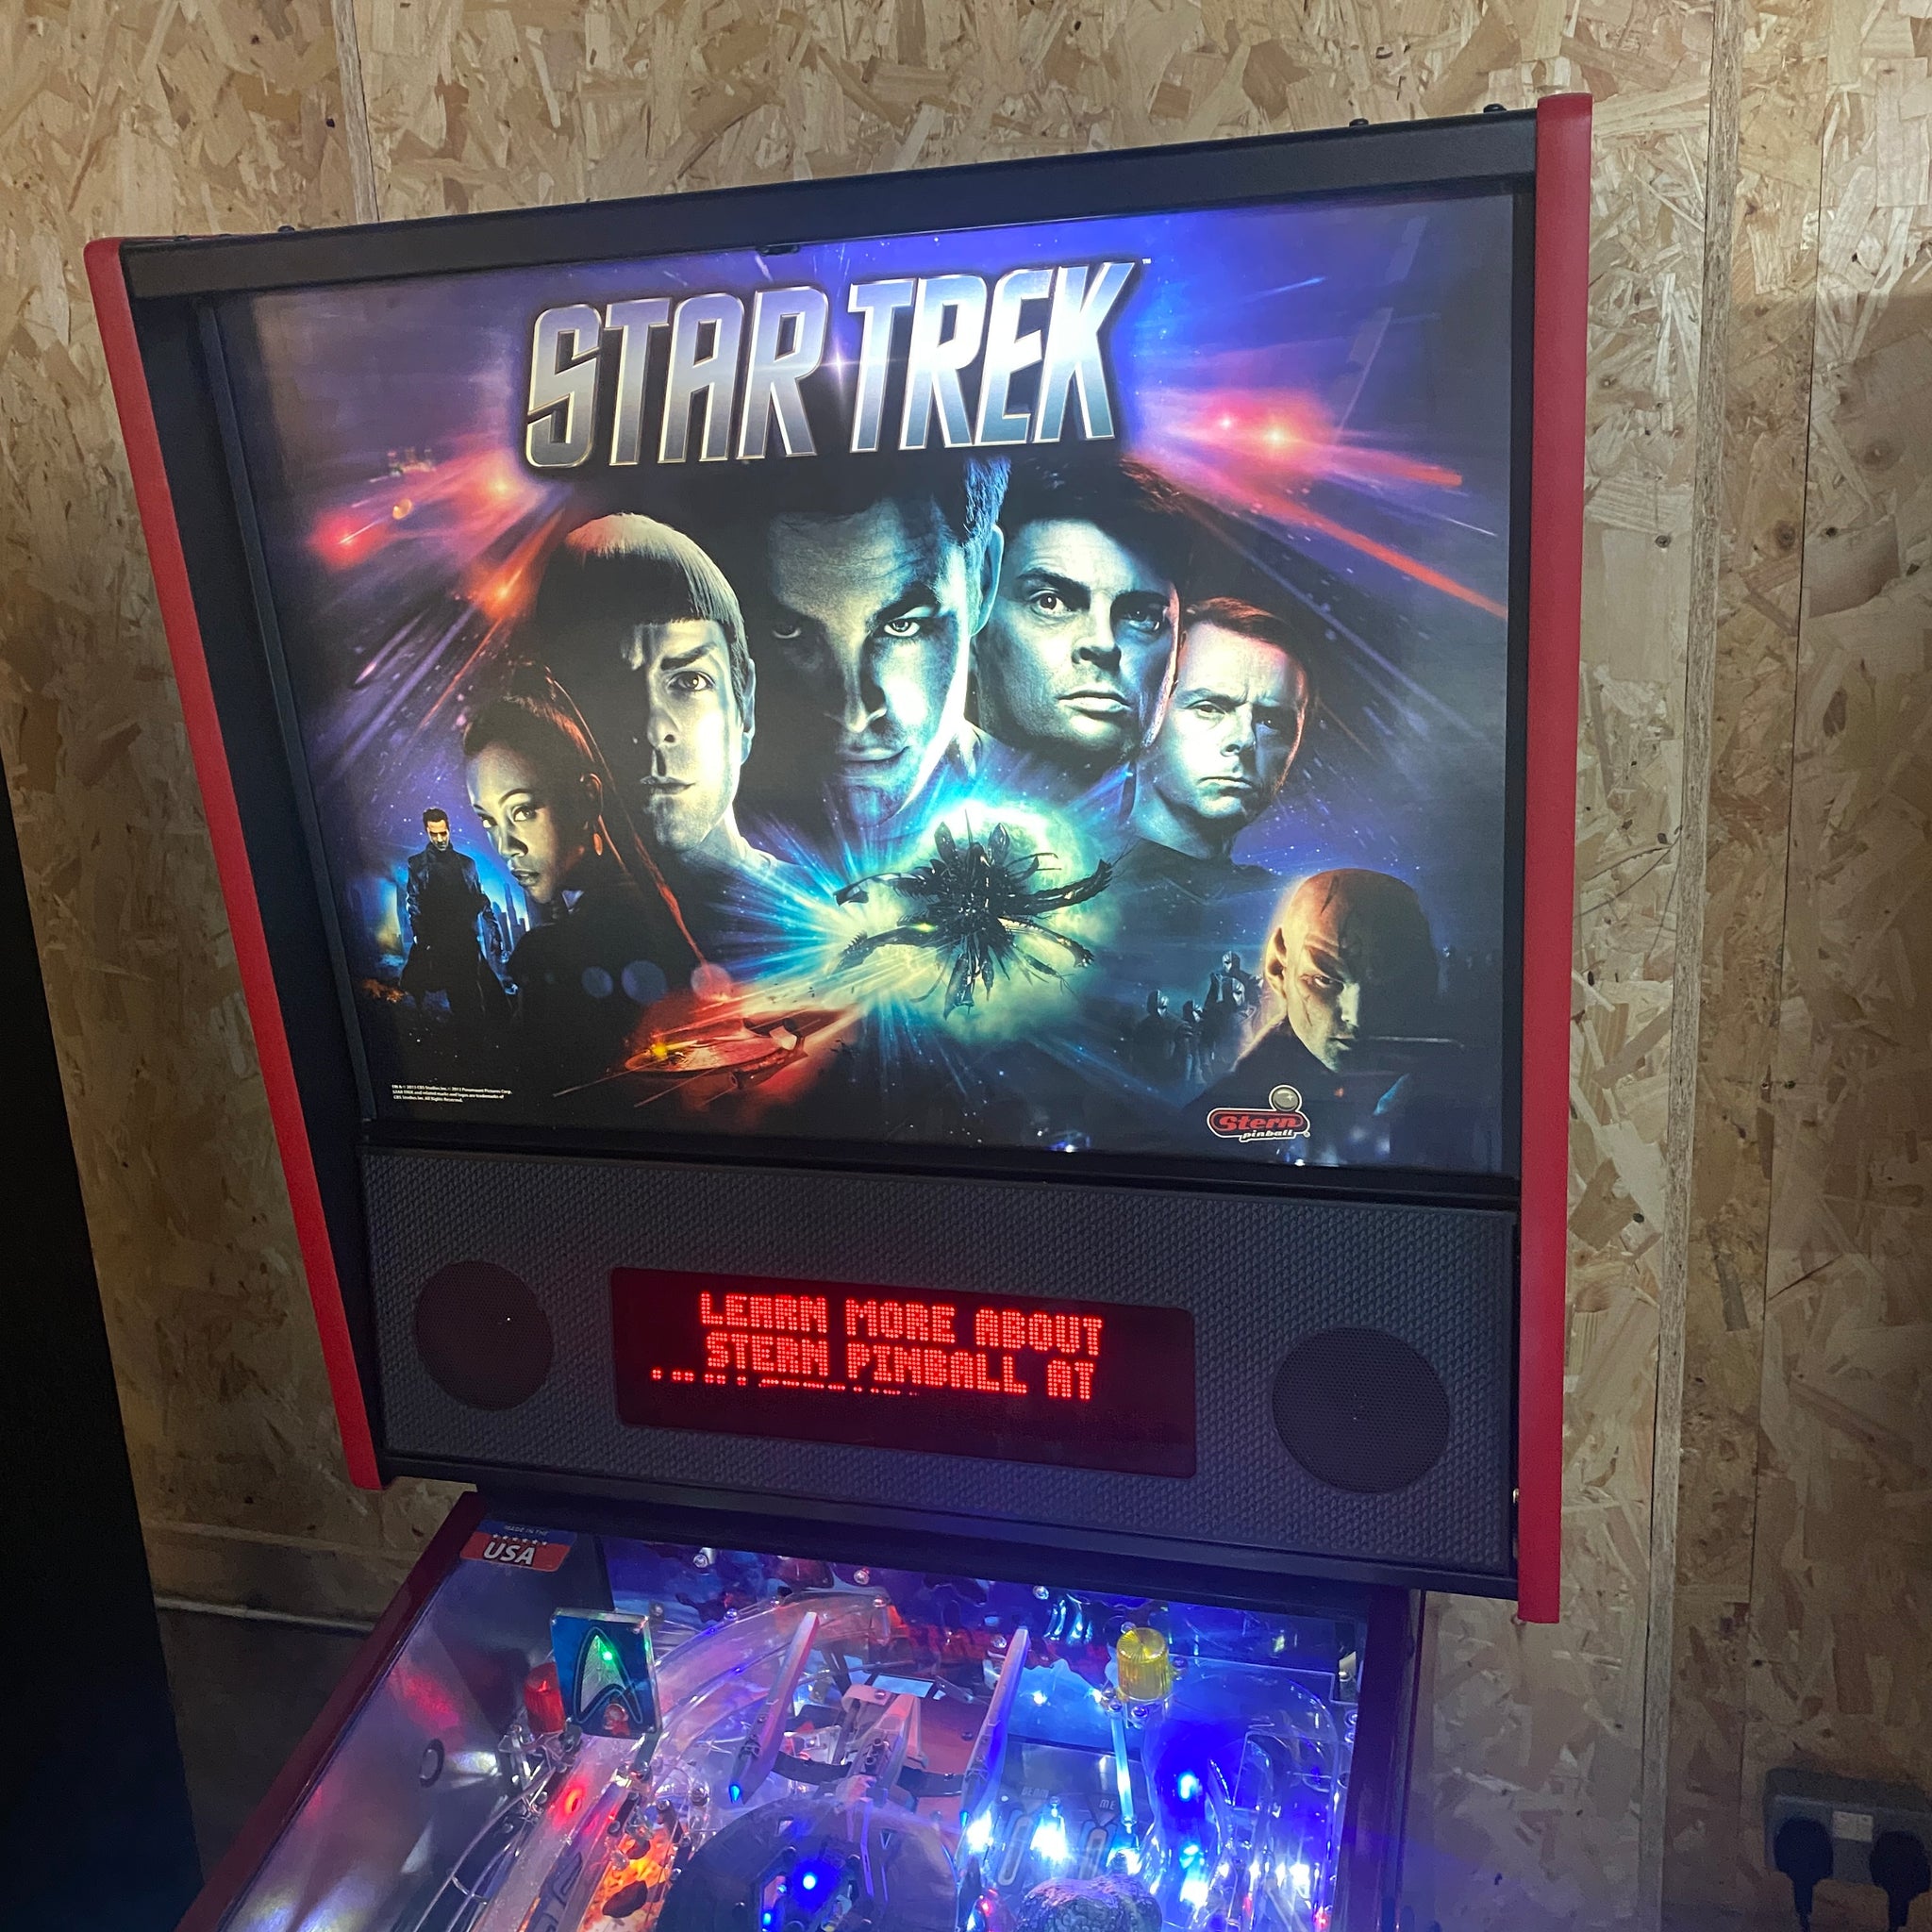 2013 Star Trek Premium Pinball Machine by Stern